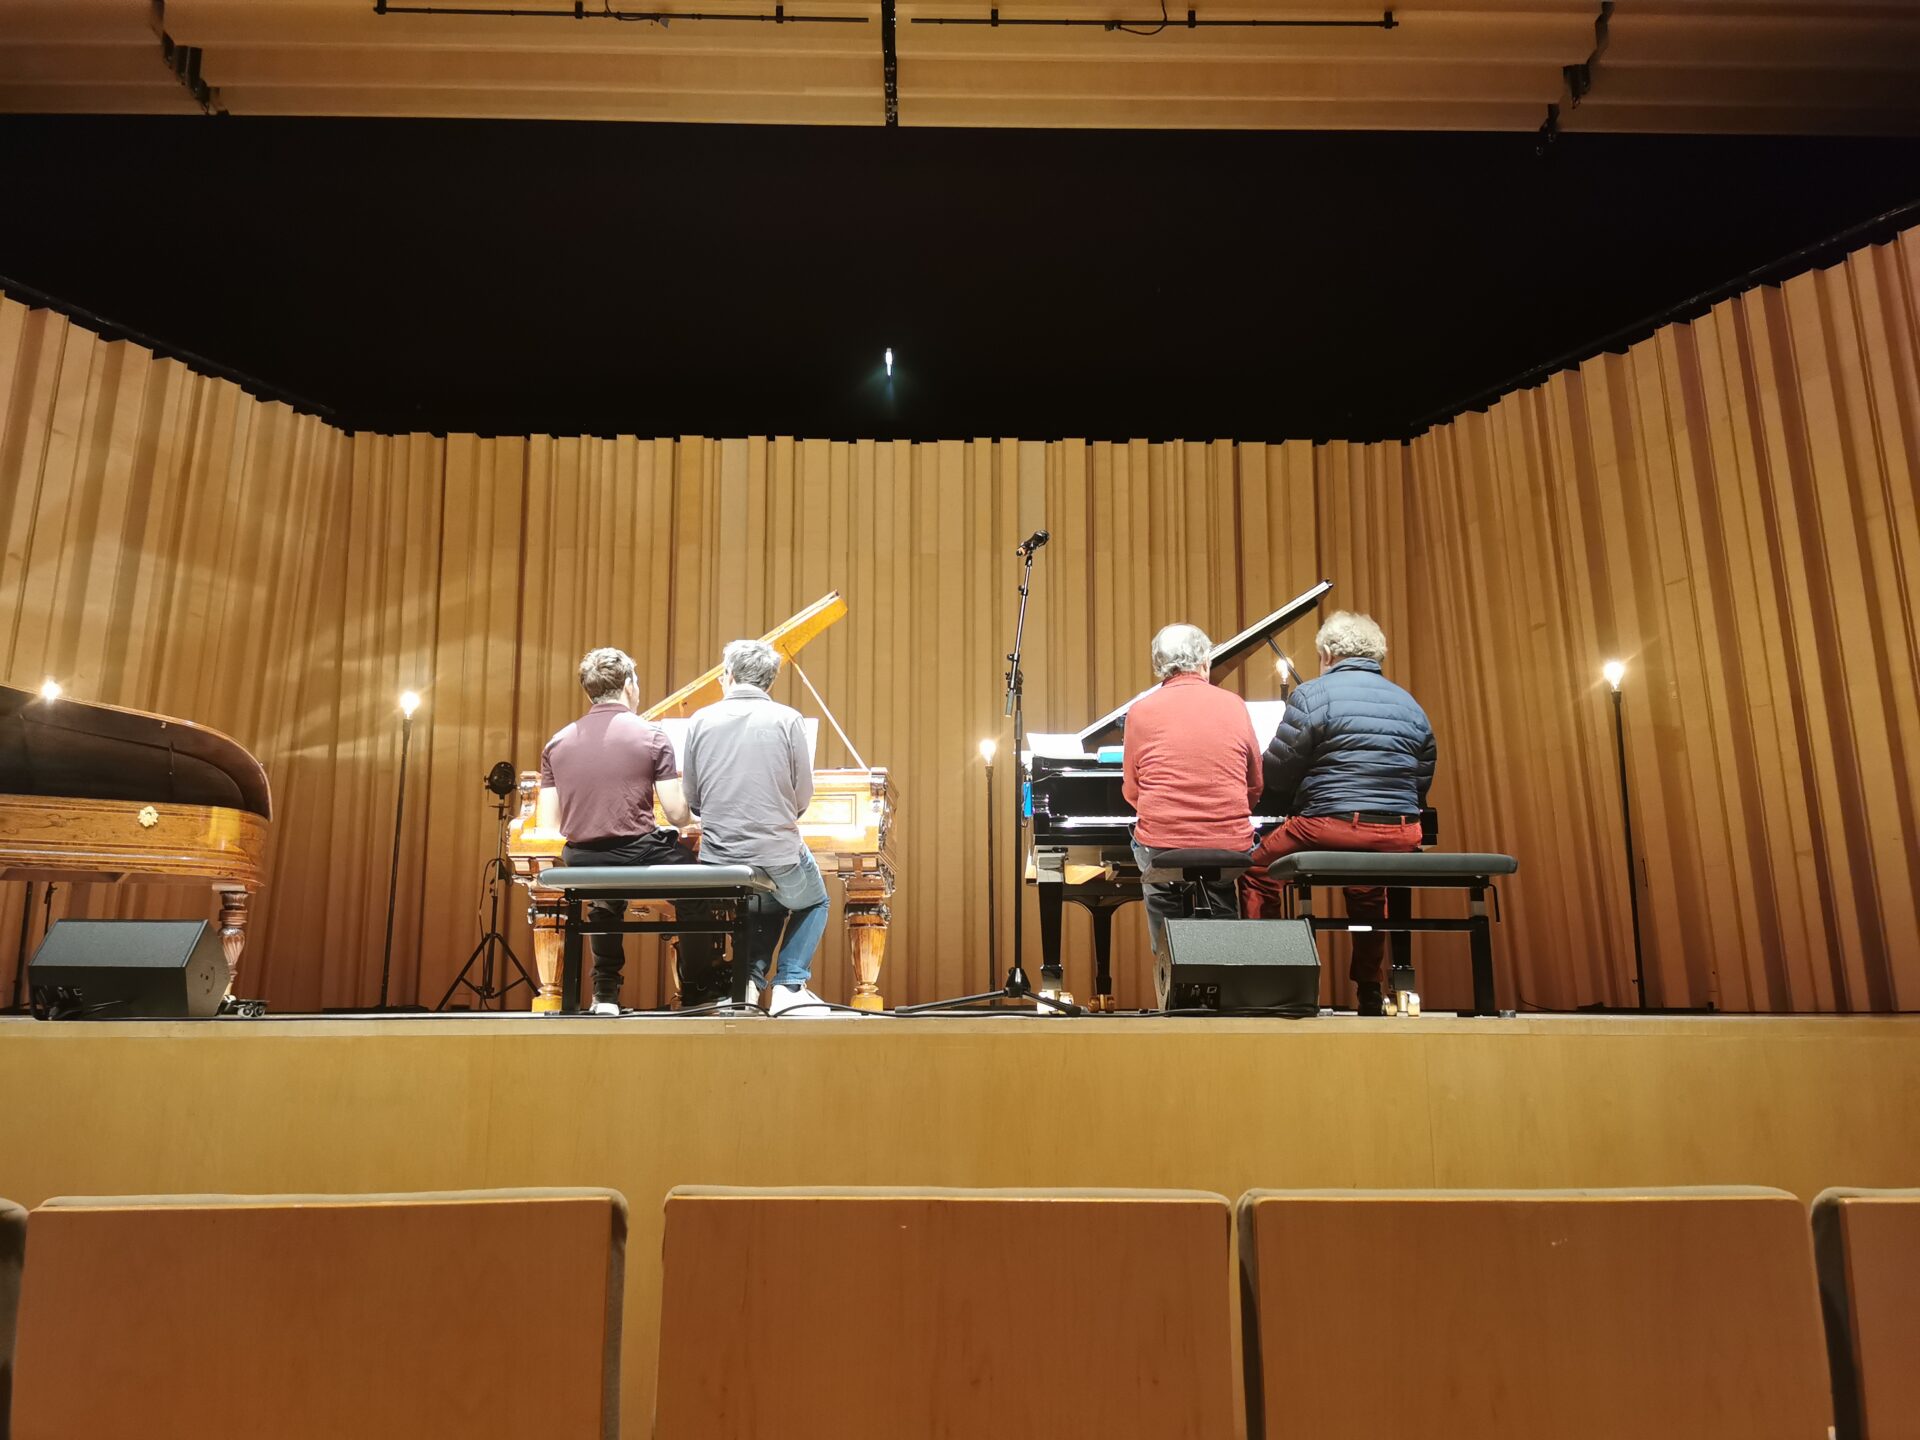 David Kadouch, Jean-Frédéric Neuburger, Alain Planès et Jean-François Heisser de dos jouent sur deux pianos à queue